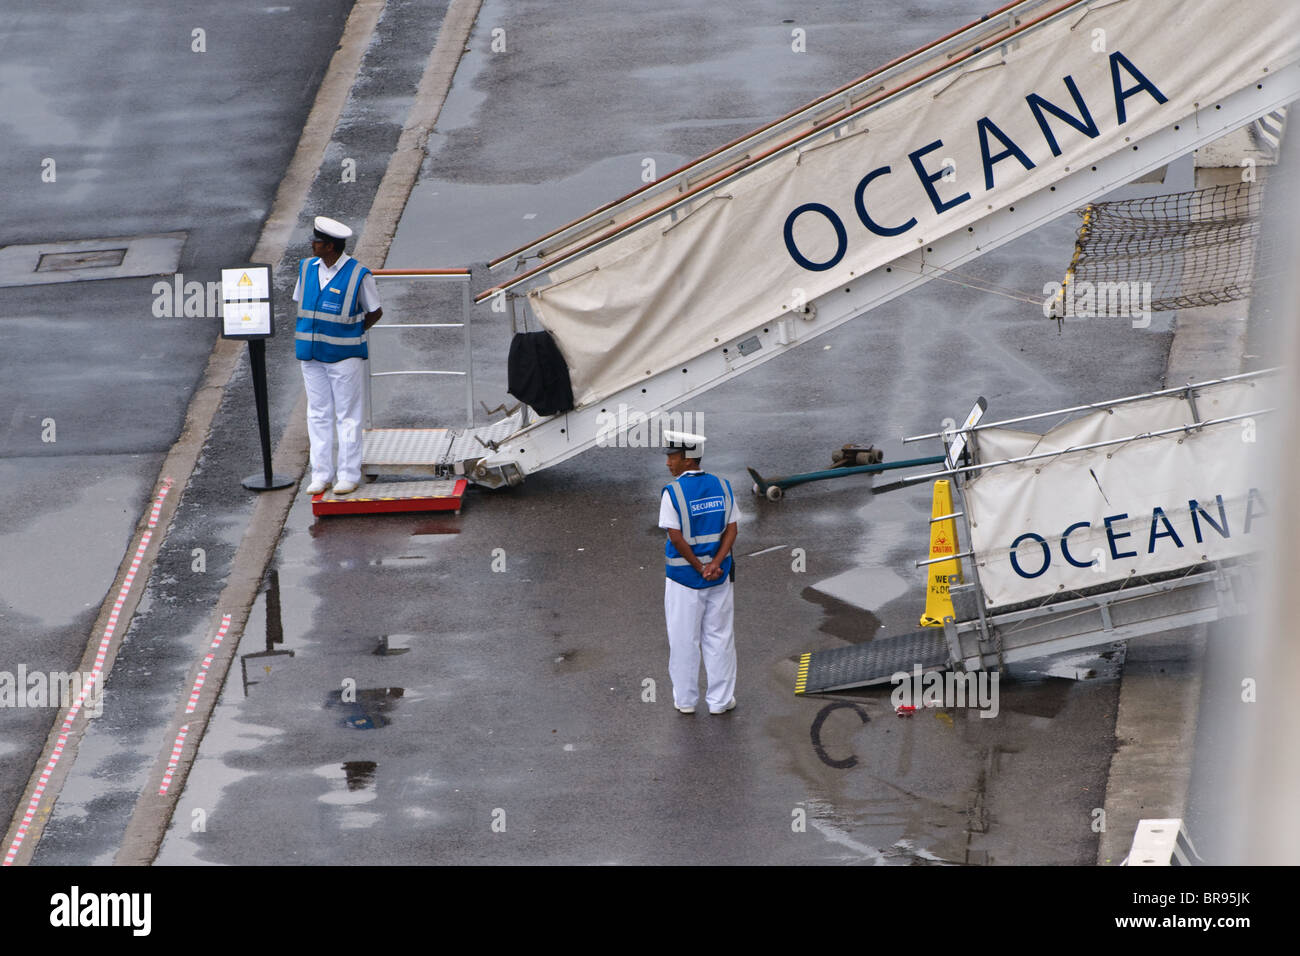 Die Gangplank abgesetzt durch Kreuzfahrtschiff Oceana (P & O) im Hafen von Livorno Italien P & O Cruises logo Stockfoto